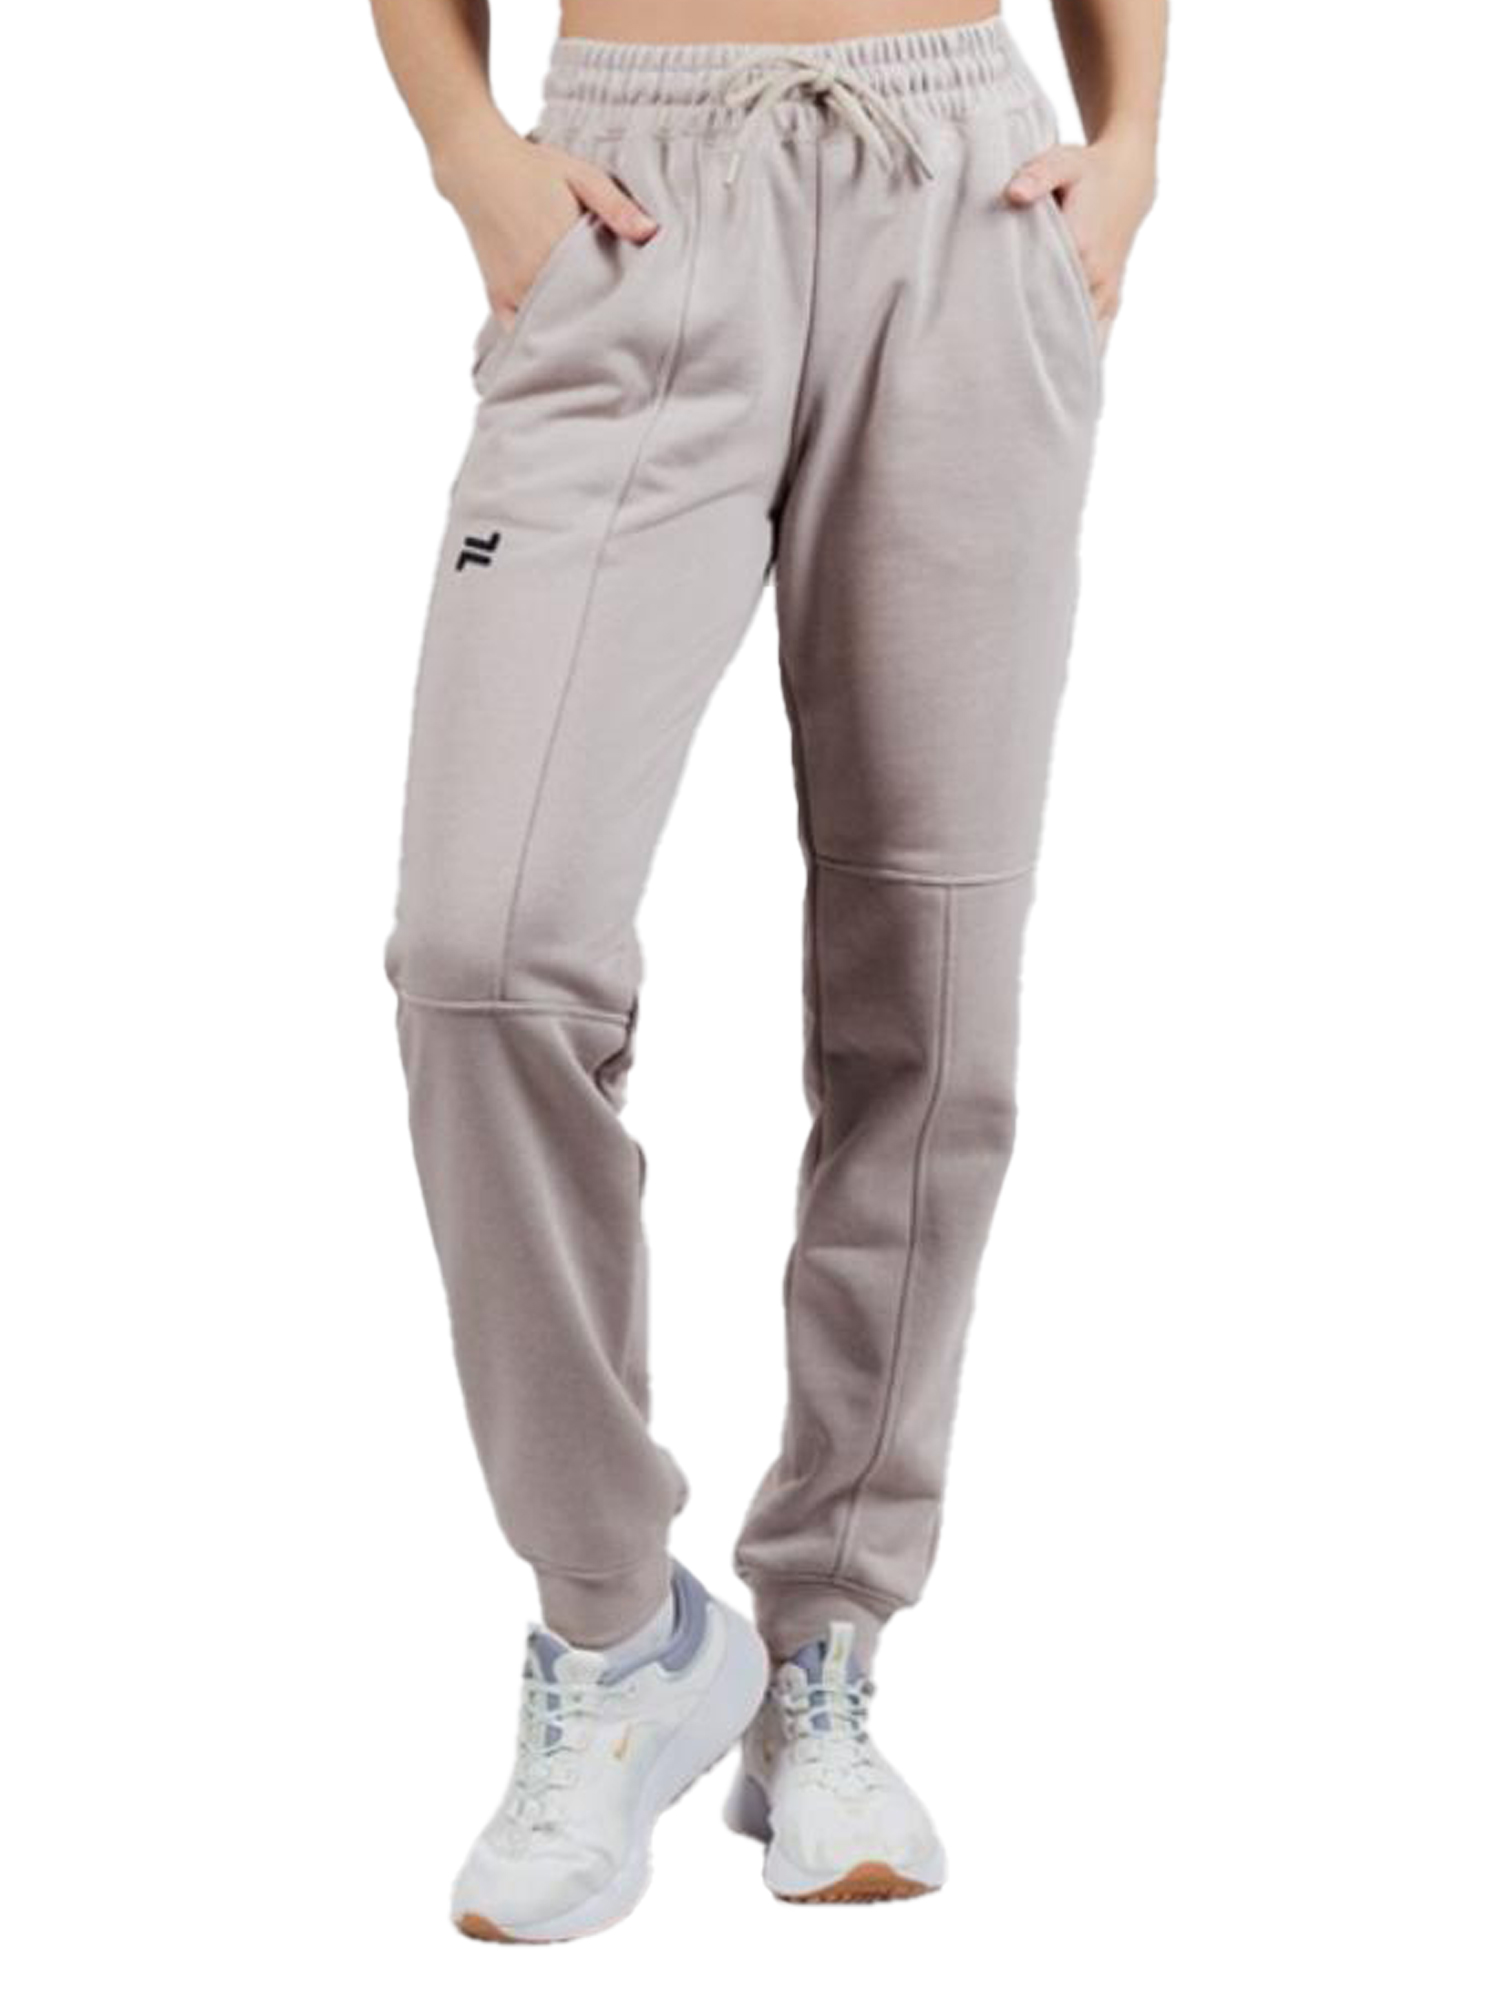 Спортивные брюки женские NordSki Outfit W бежевые 48